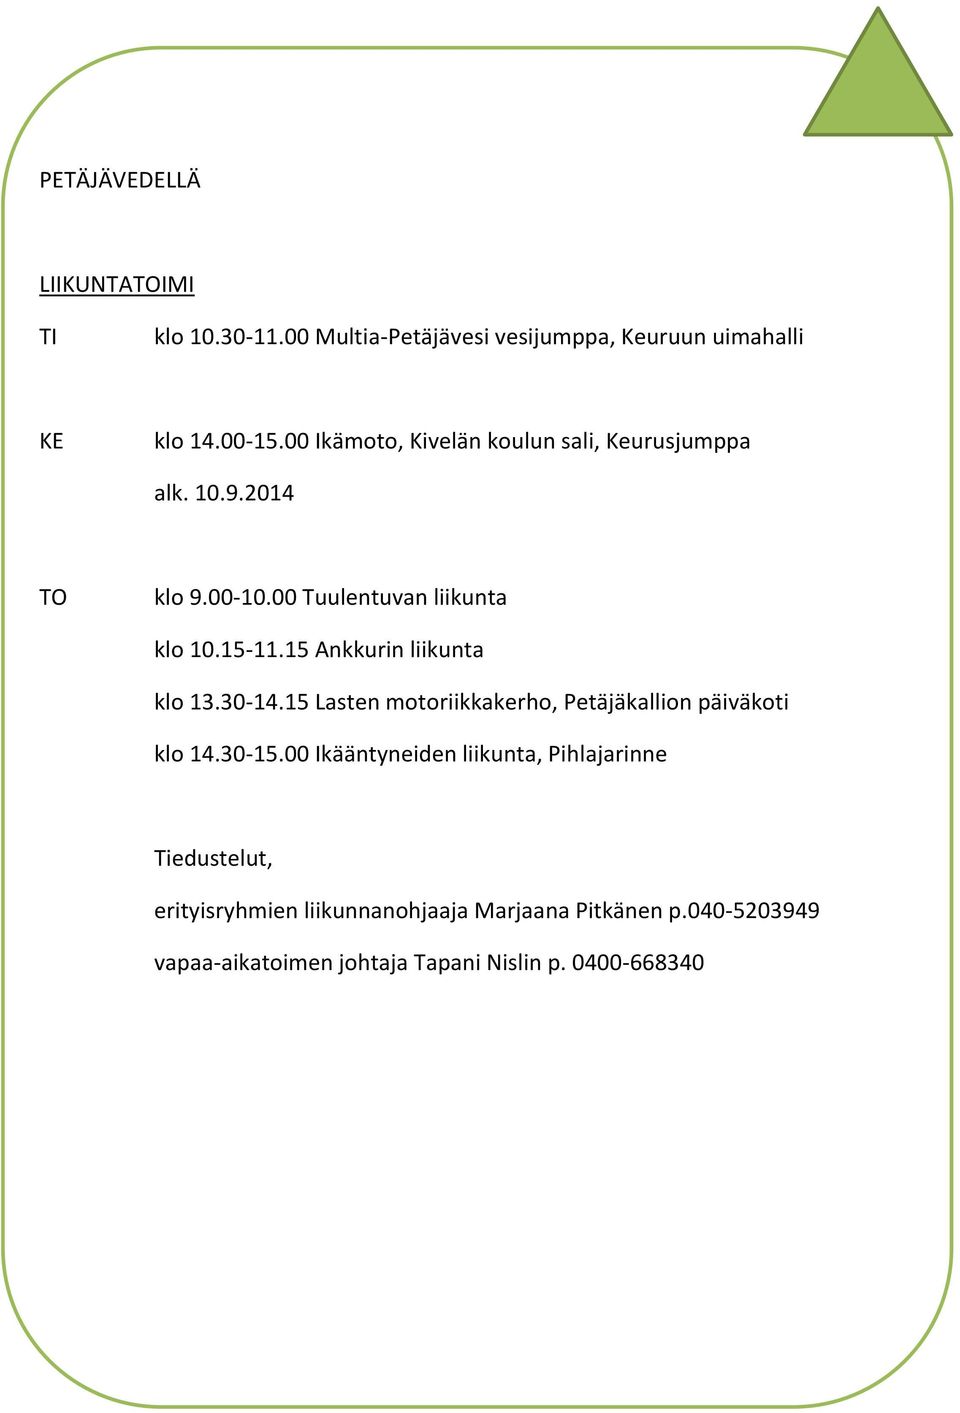 15 Ankkurin liikunta klo 13.30-14.15 Lasten motoriikkakerho, Petäjäkallion päiväkoti klo 14.30-15.